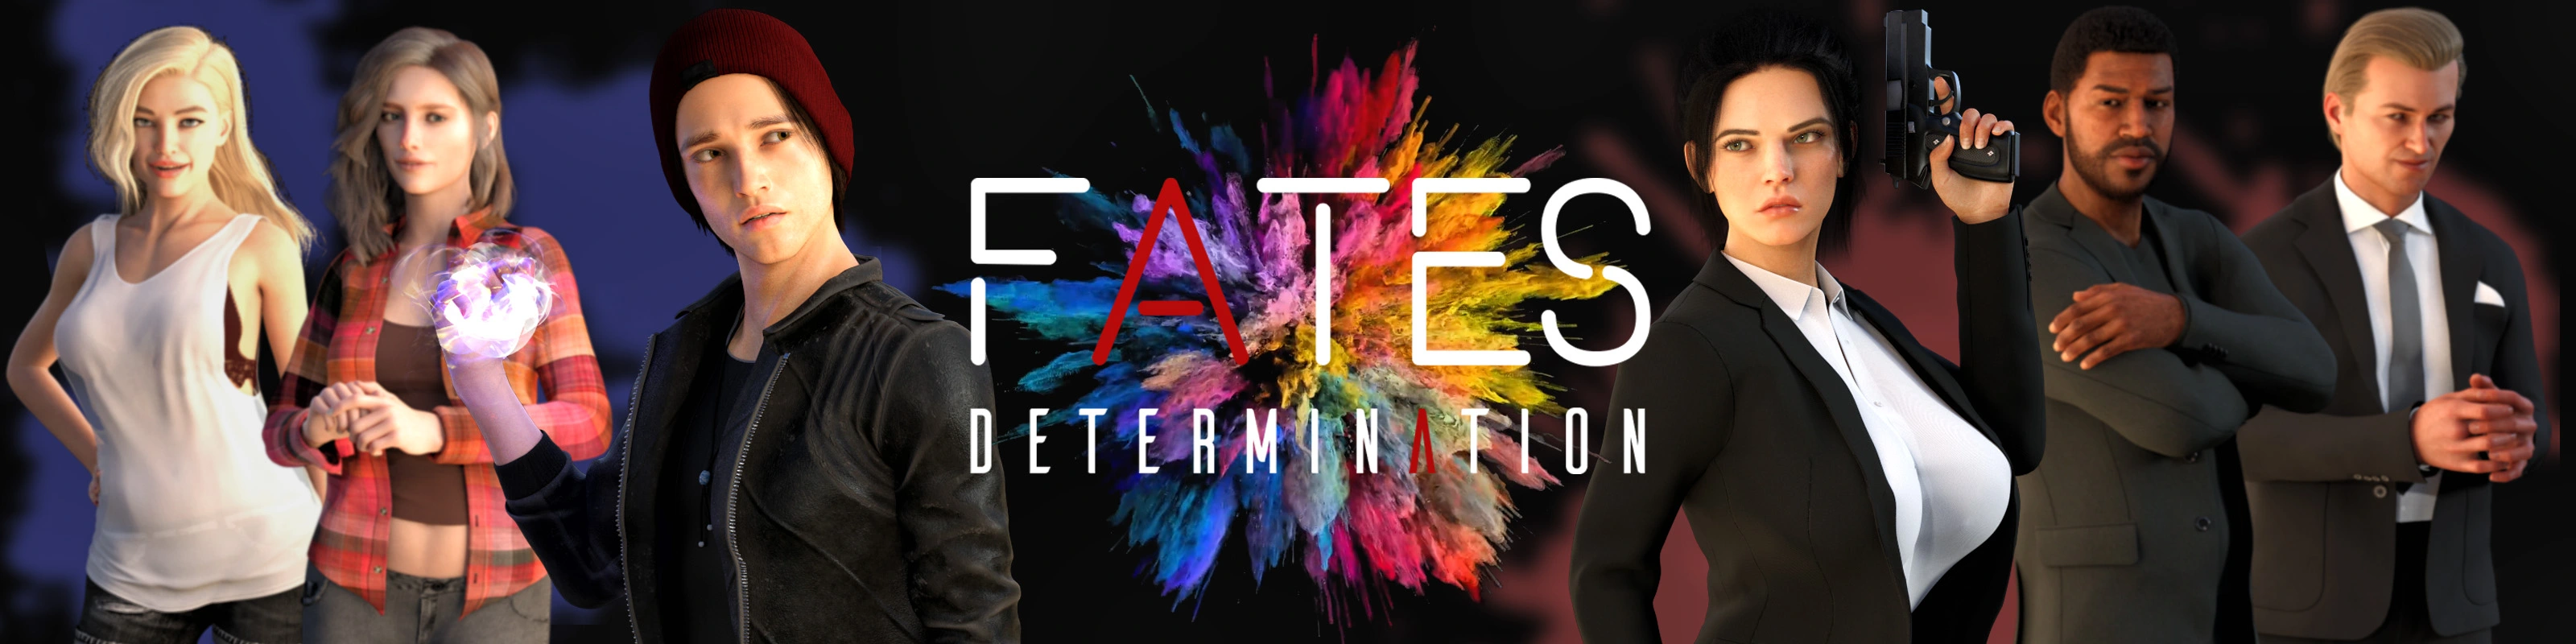 Fates: Determination main image